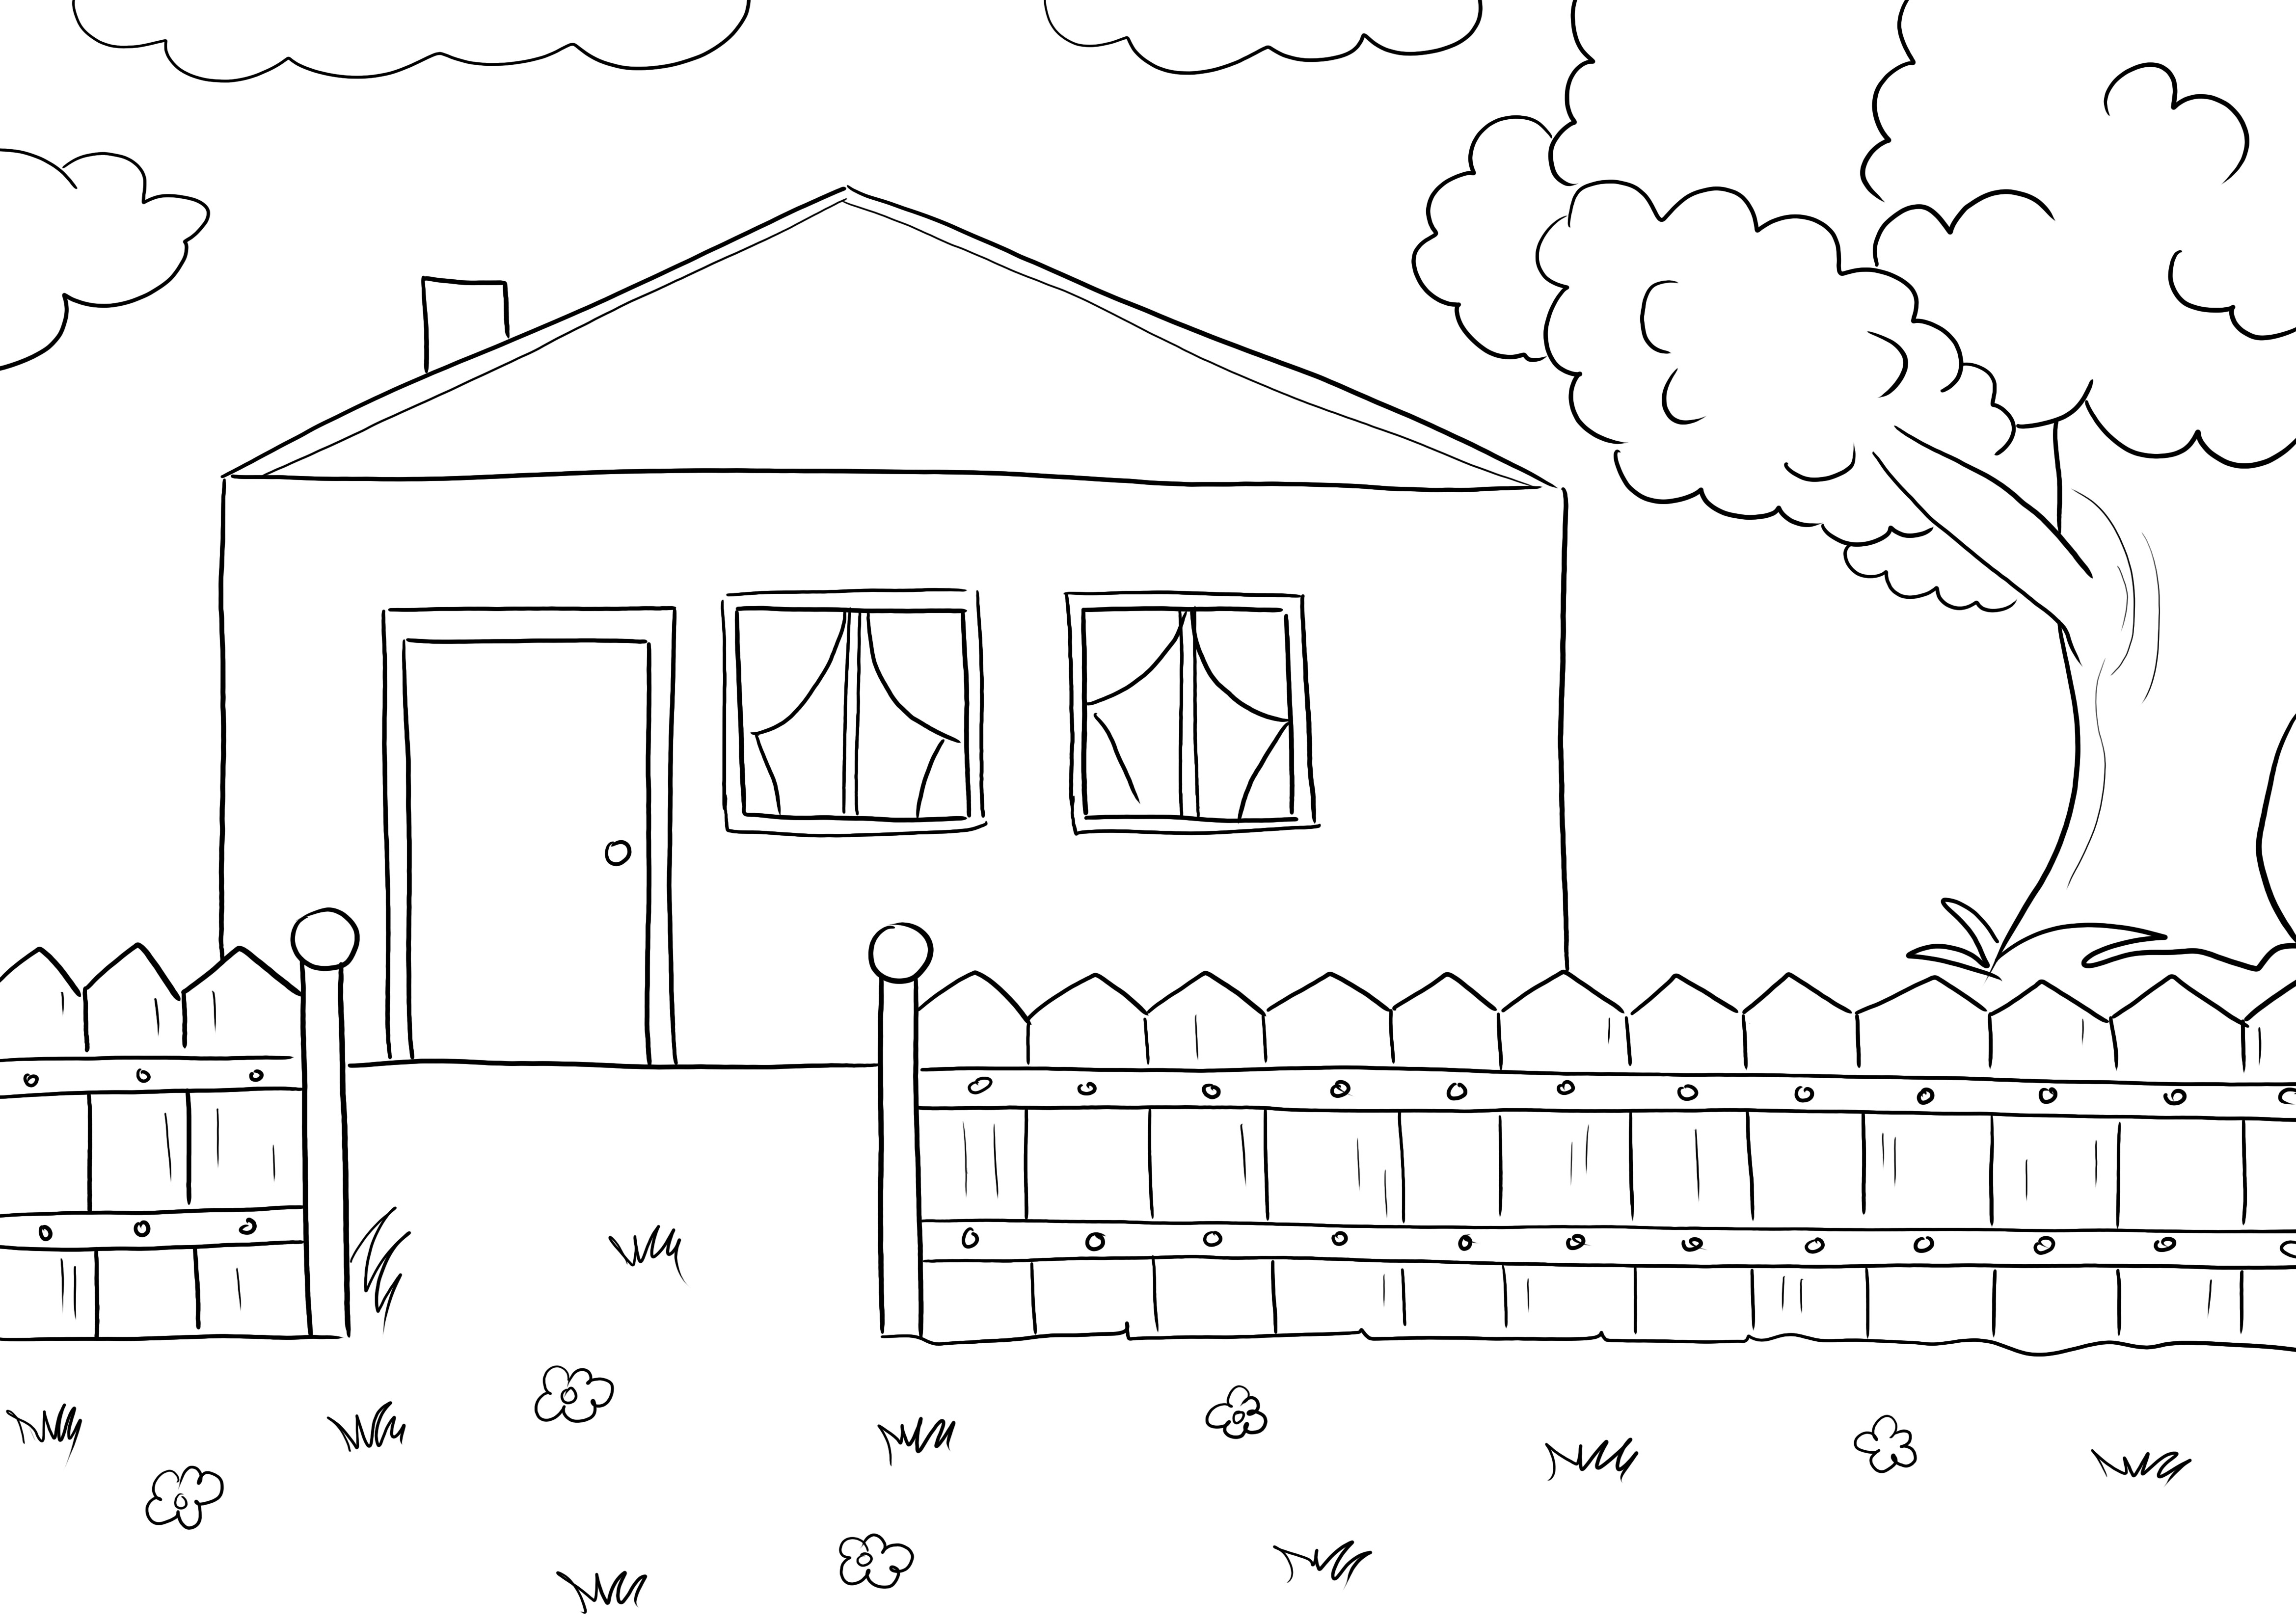 La migliore immagine da colorare gratuita di una casa di campagna facile da disegnare per i bambini